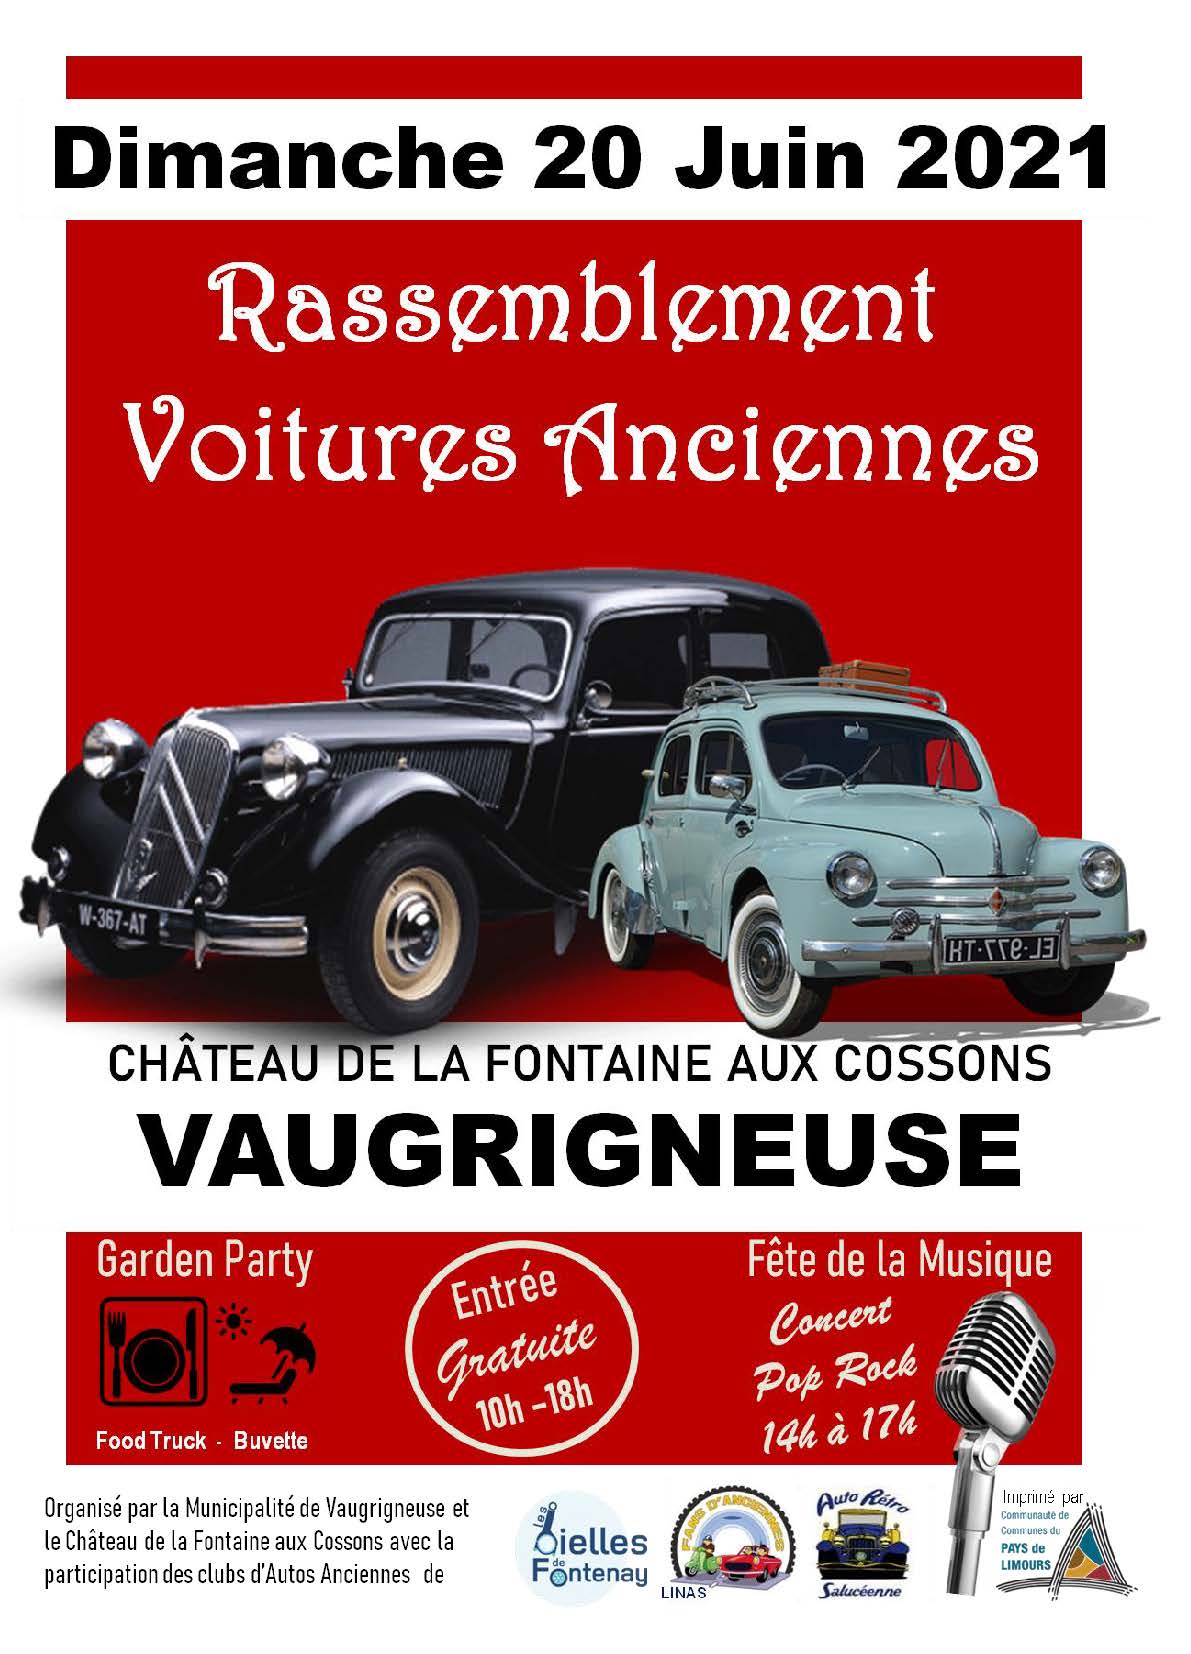 Rassemblement de voitures anciennes avec la participation des Bielles de Fontenay